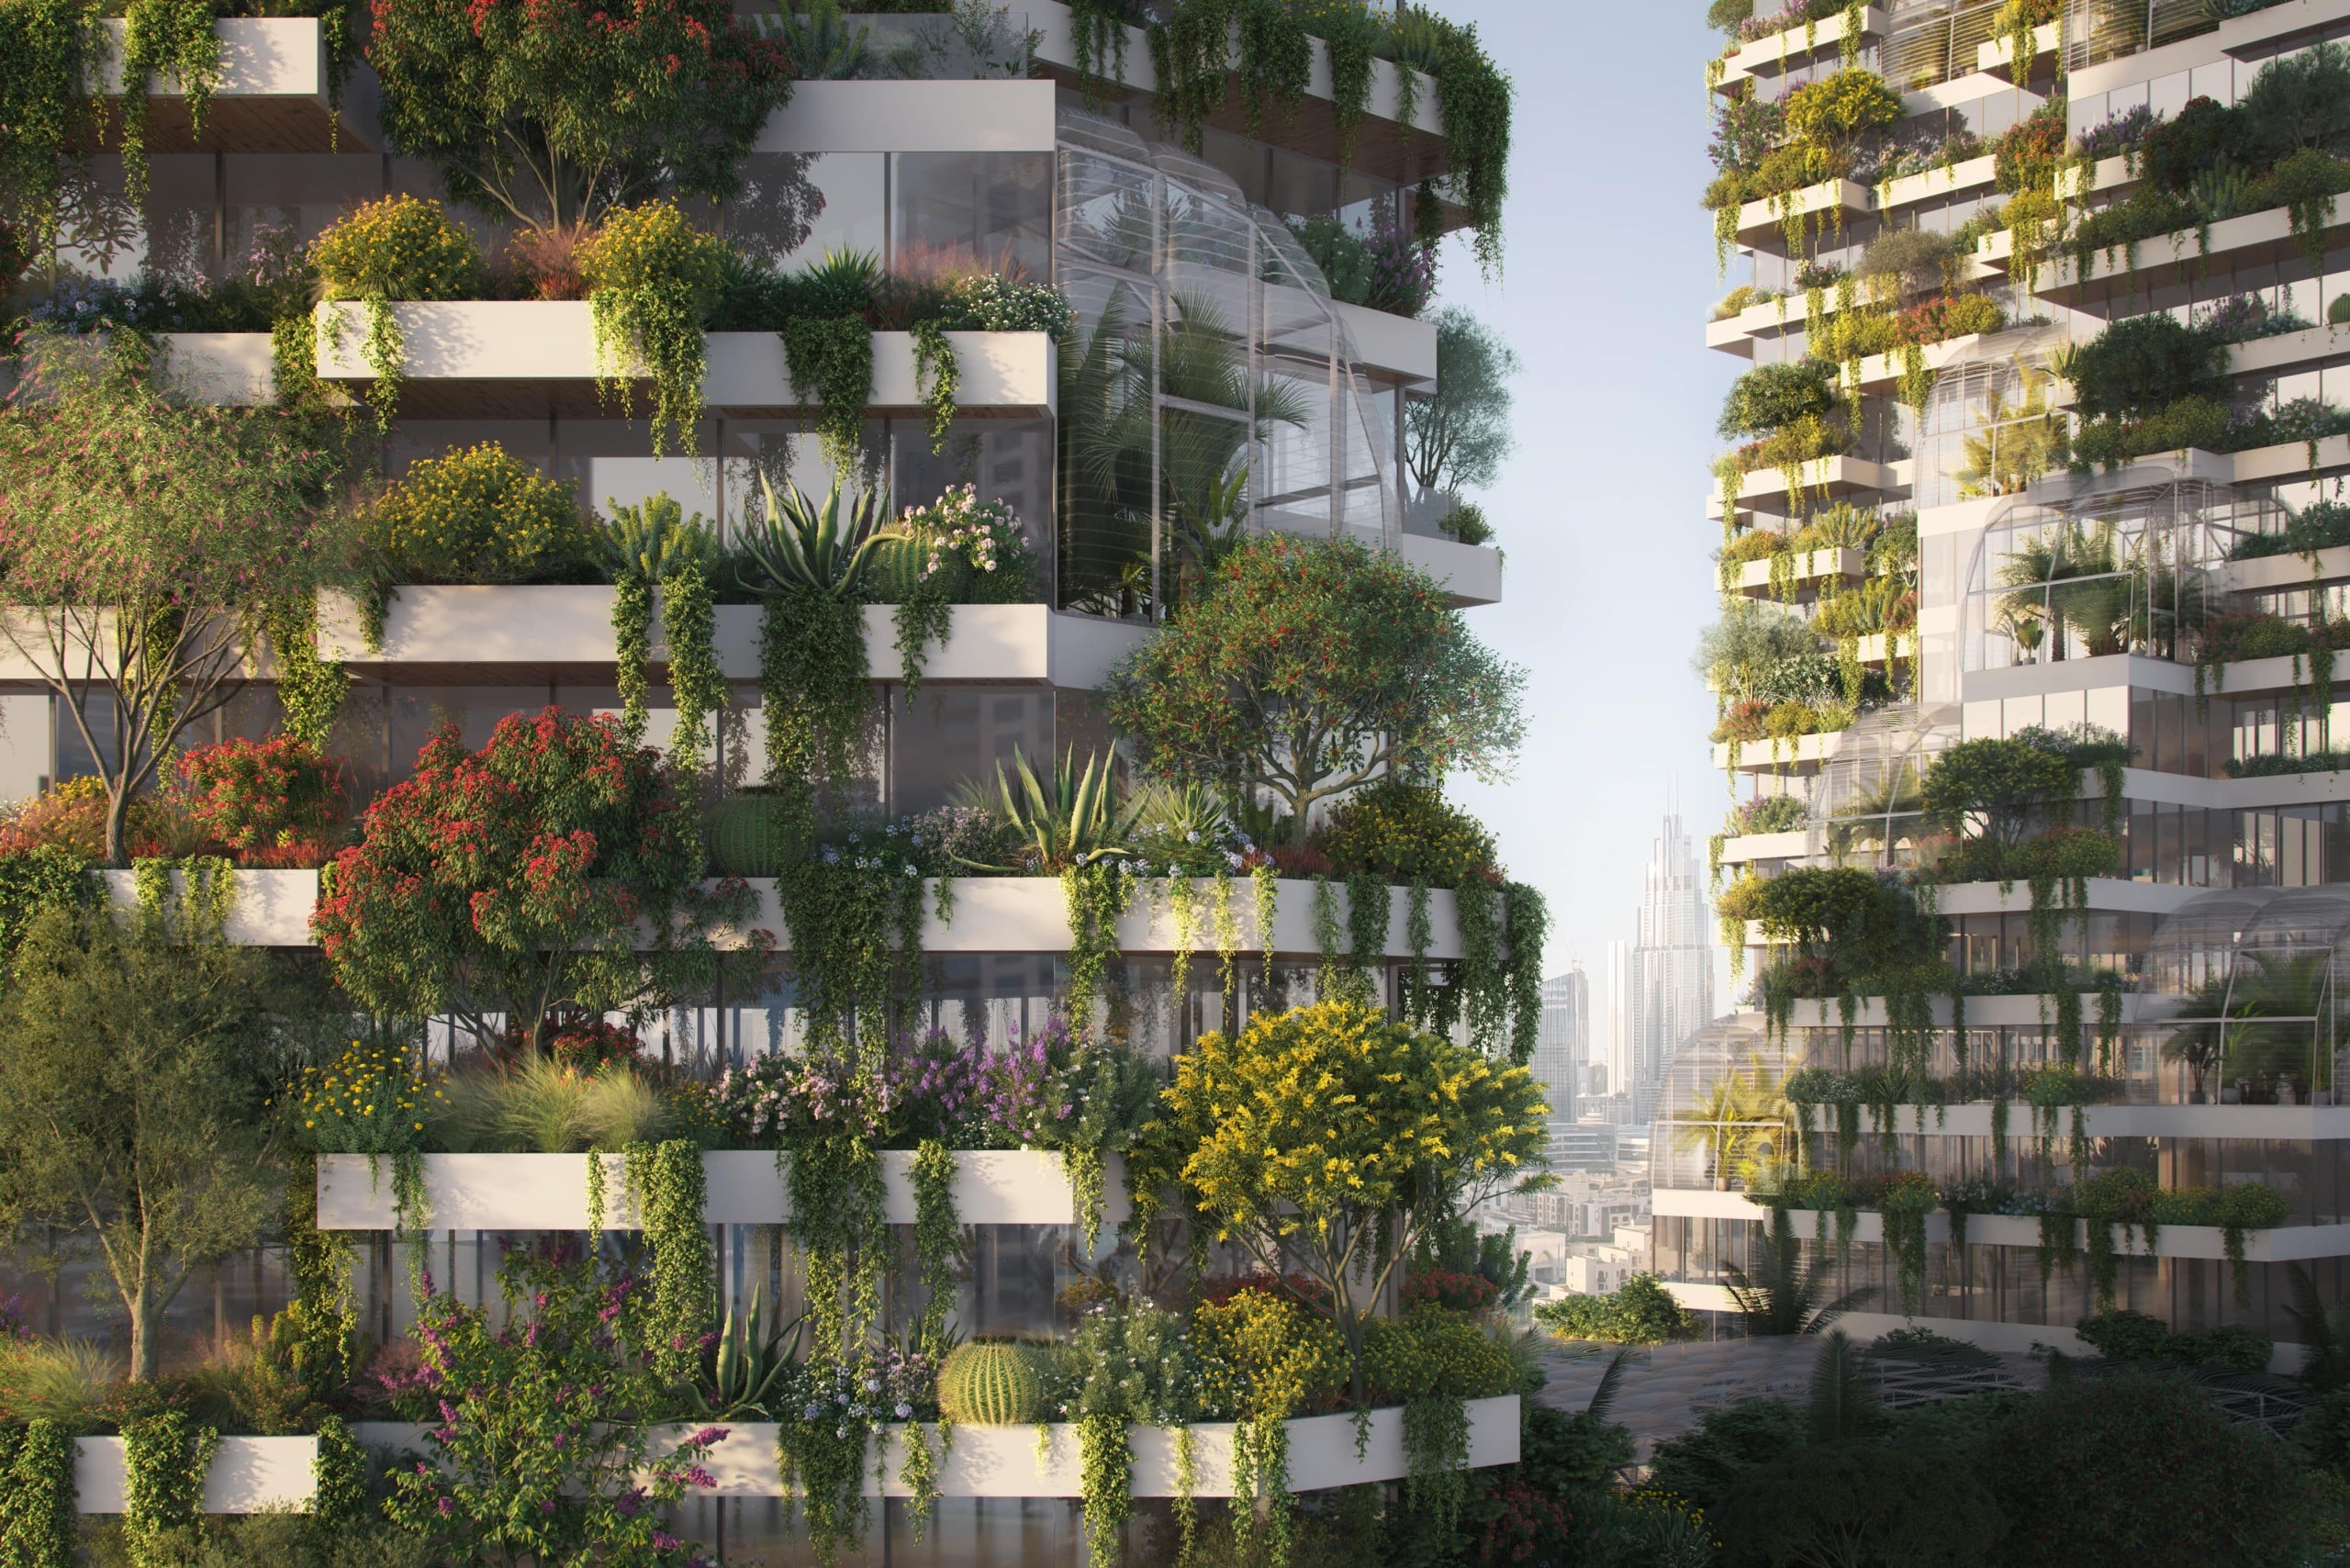 Bis zum 18. November 2022 findet die COP27 in Ägypten statt, wo Stefano Boeri das Projekt „Dubai Vertical Forest“ vorgestellt hat. Visualisierung: © Stefano Boeri Architetti